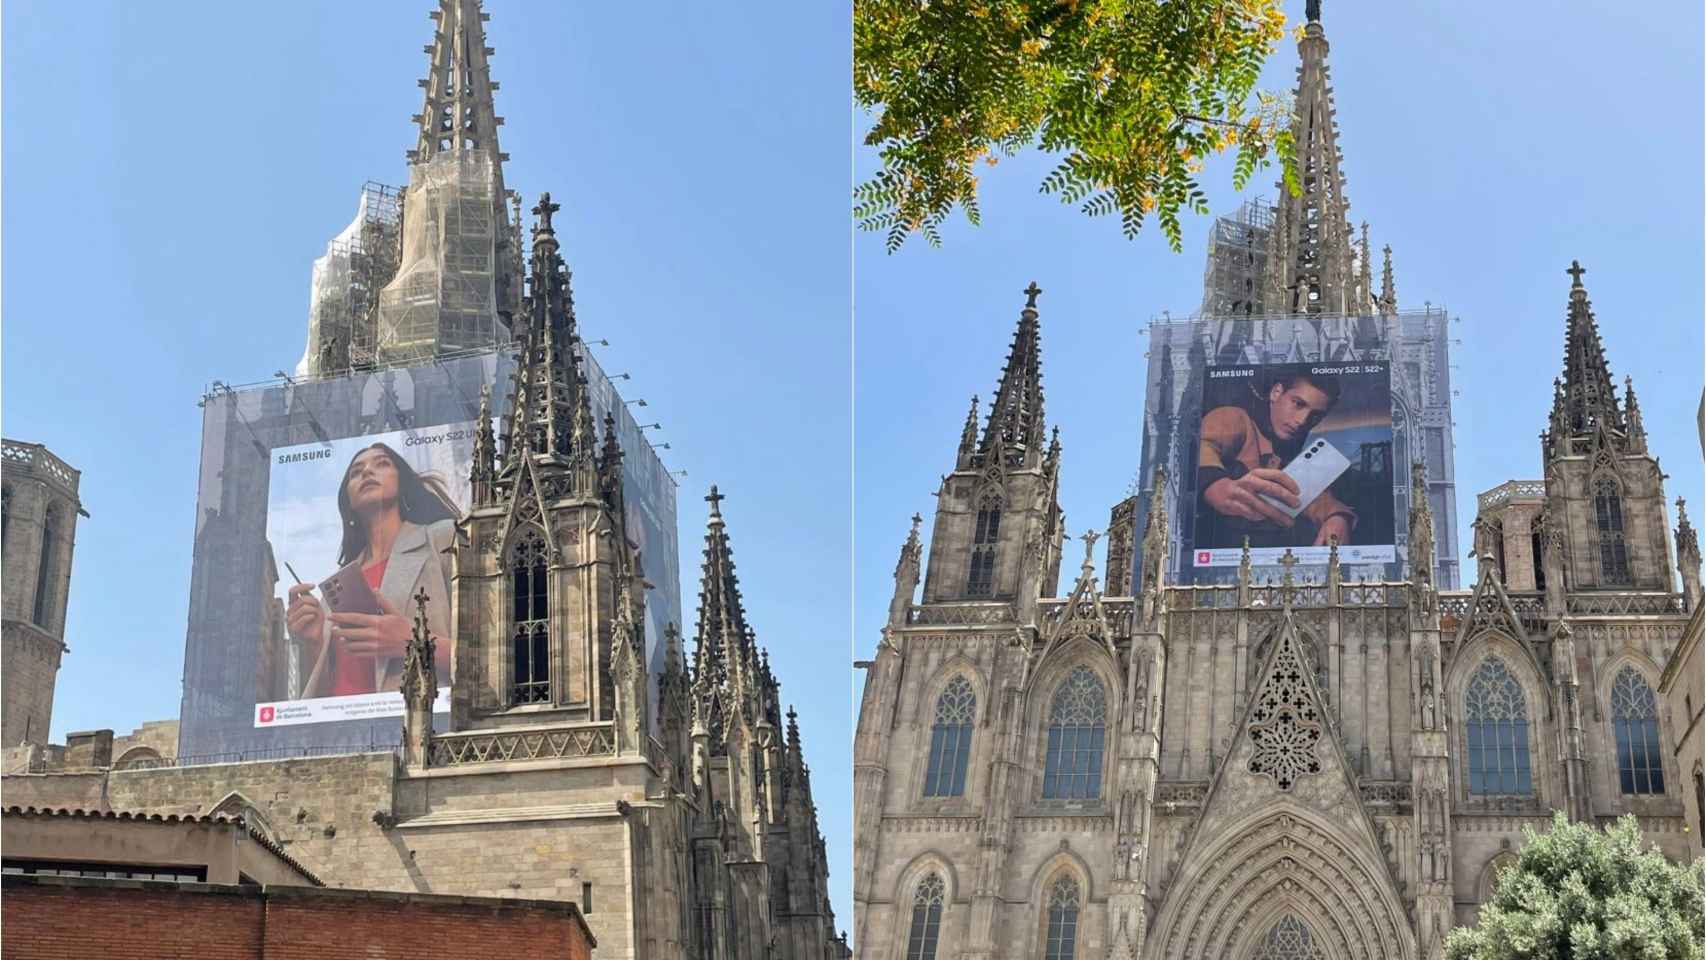 Anuncio de la compañía Samsung en la Catedral de Barcelona